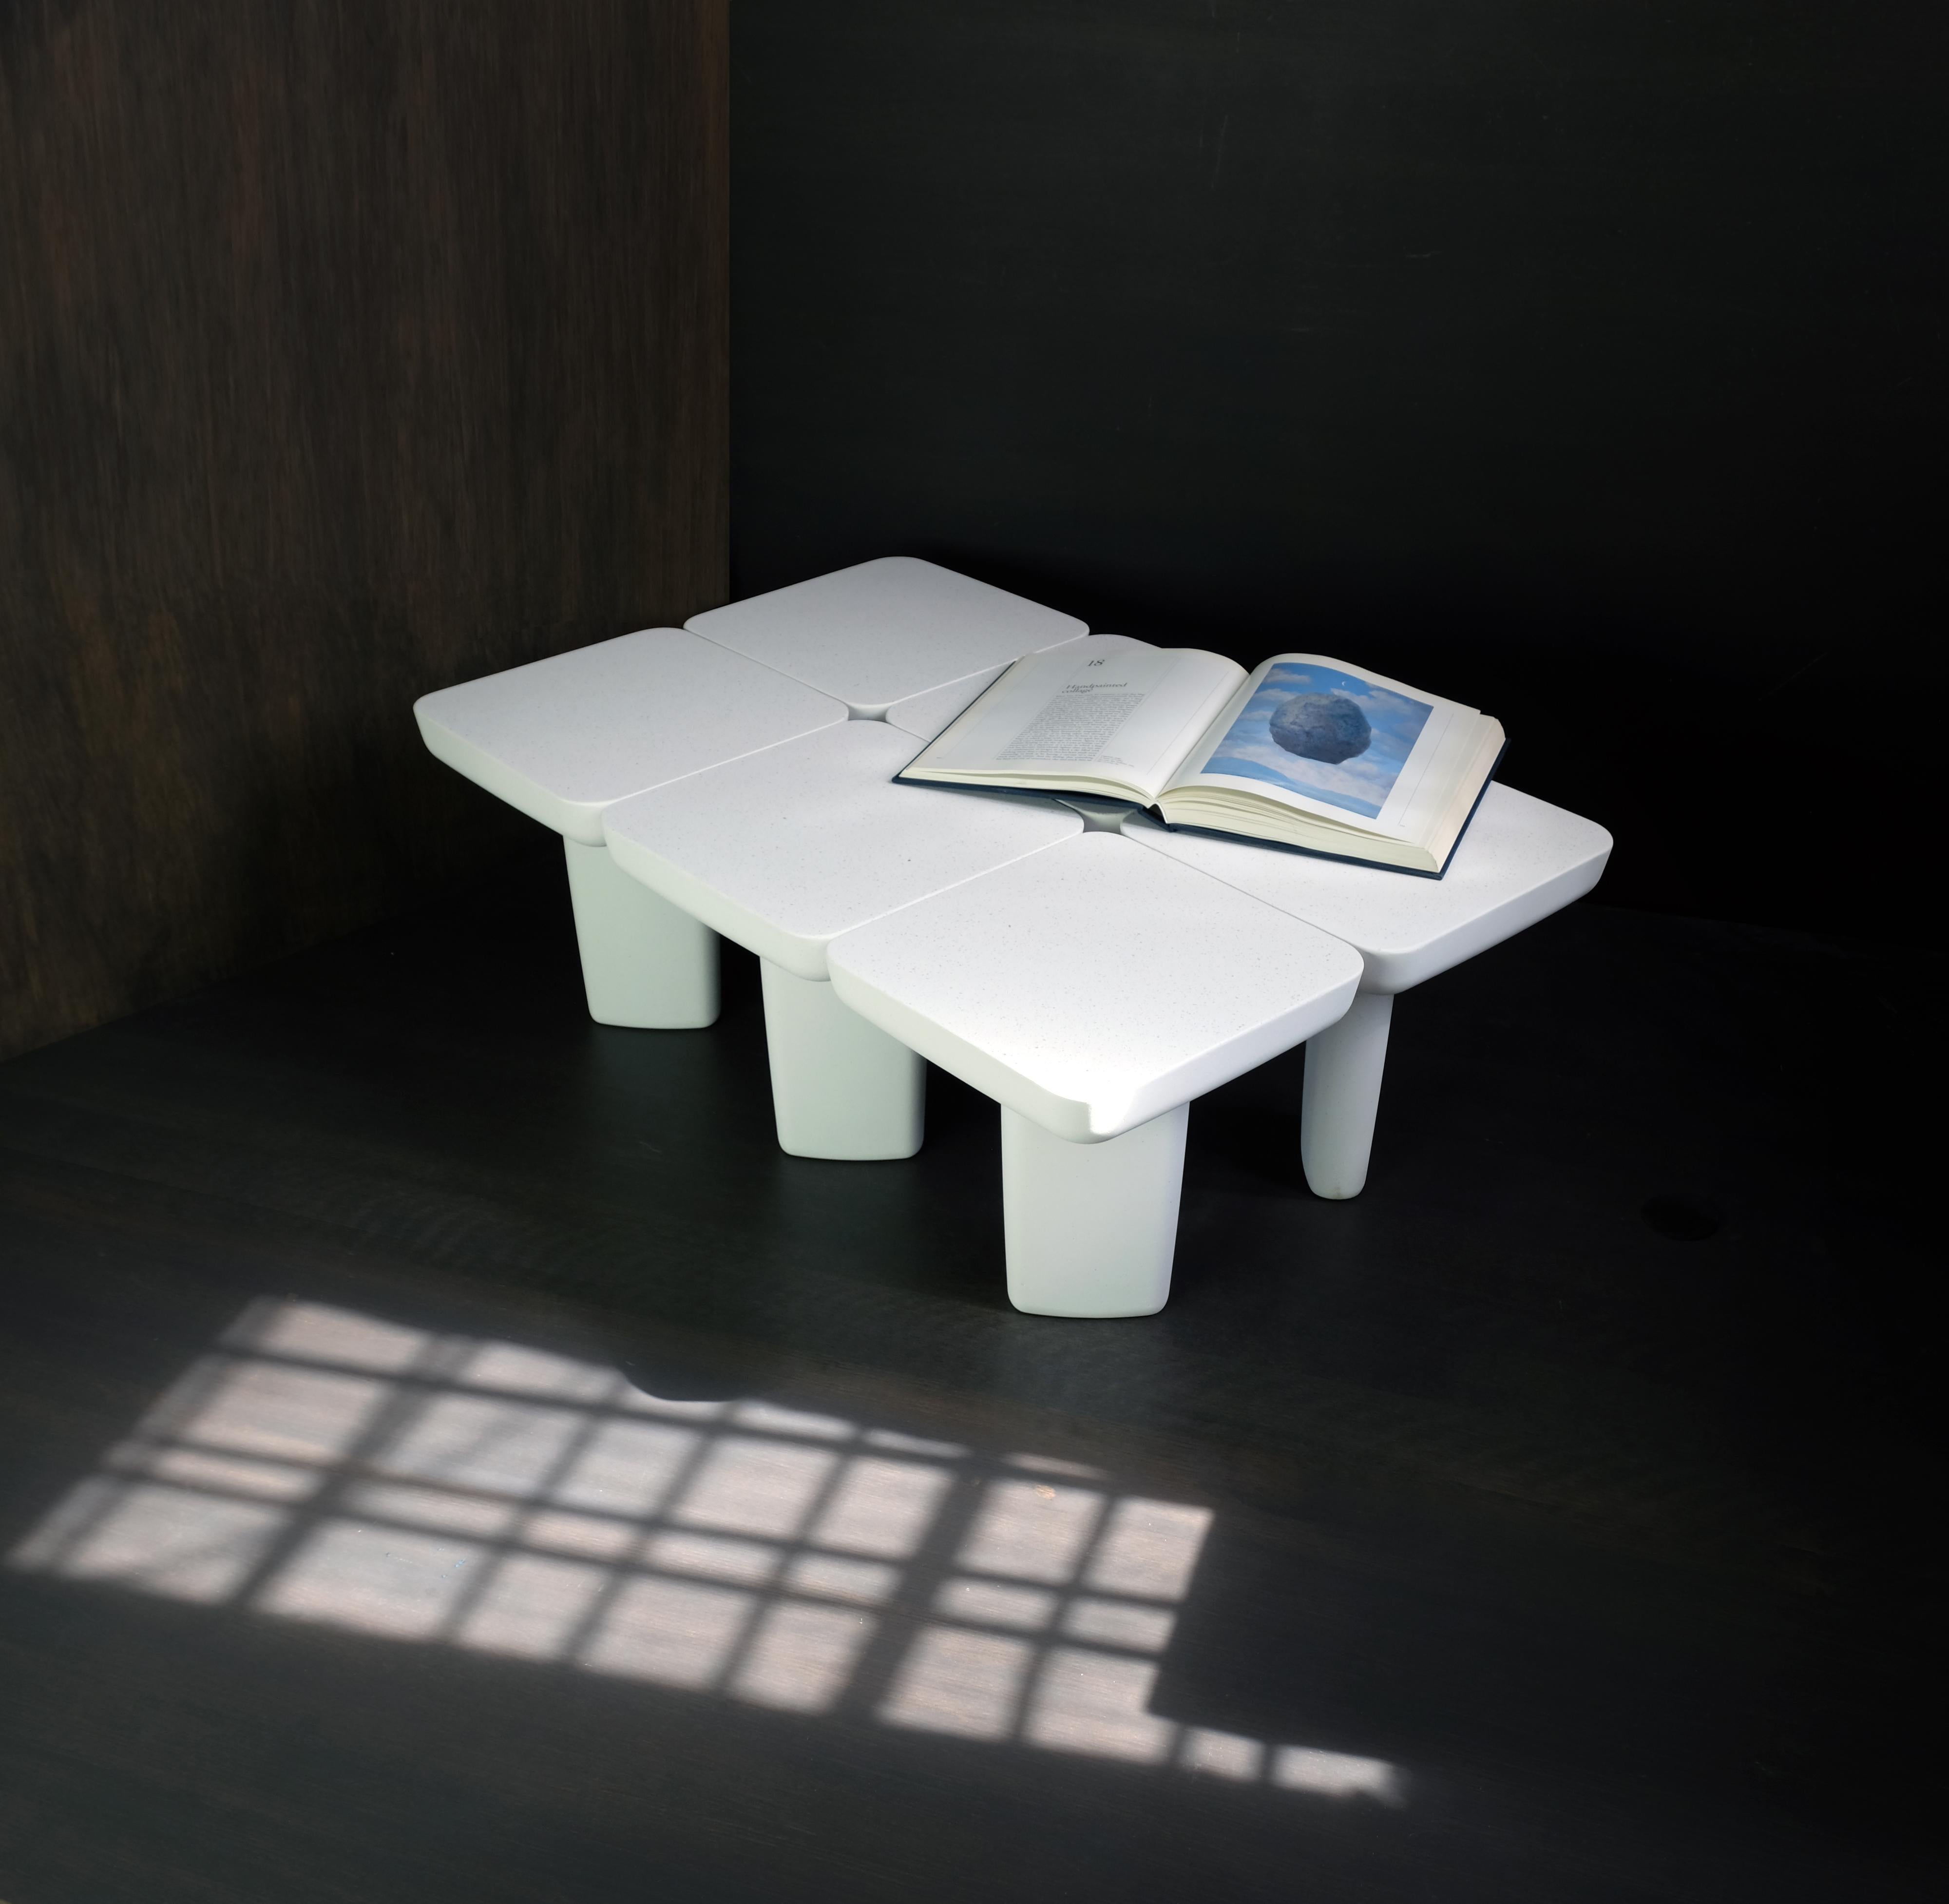 Der LEAF TABLE gehört zu unserer Kollektion von Objekten aus einem einzigen Material. Dieser schlichte und minimalistische niedrige Tisch ist zugleich bescheiden und kühn mit einem eleganten Sinn für Proportionen und Gleichgewicht. 

Entwurf: